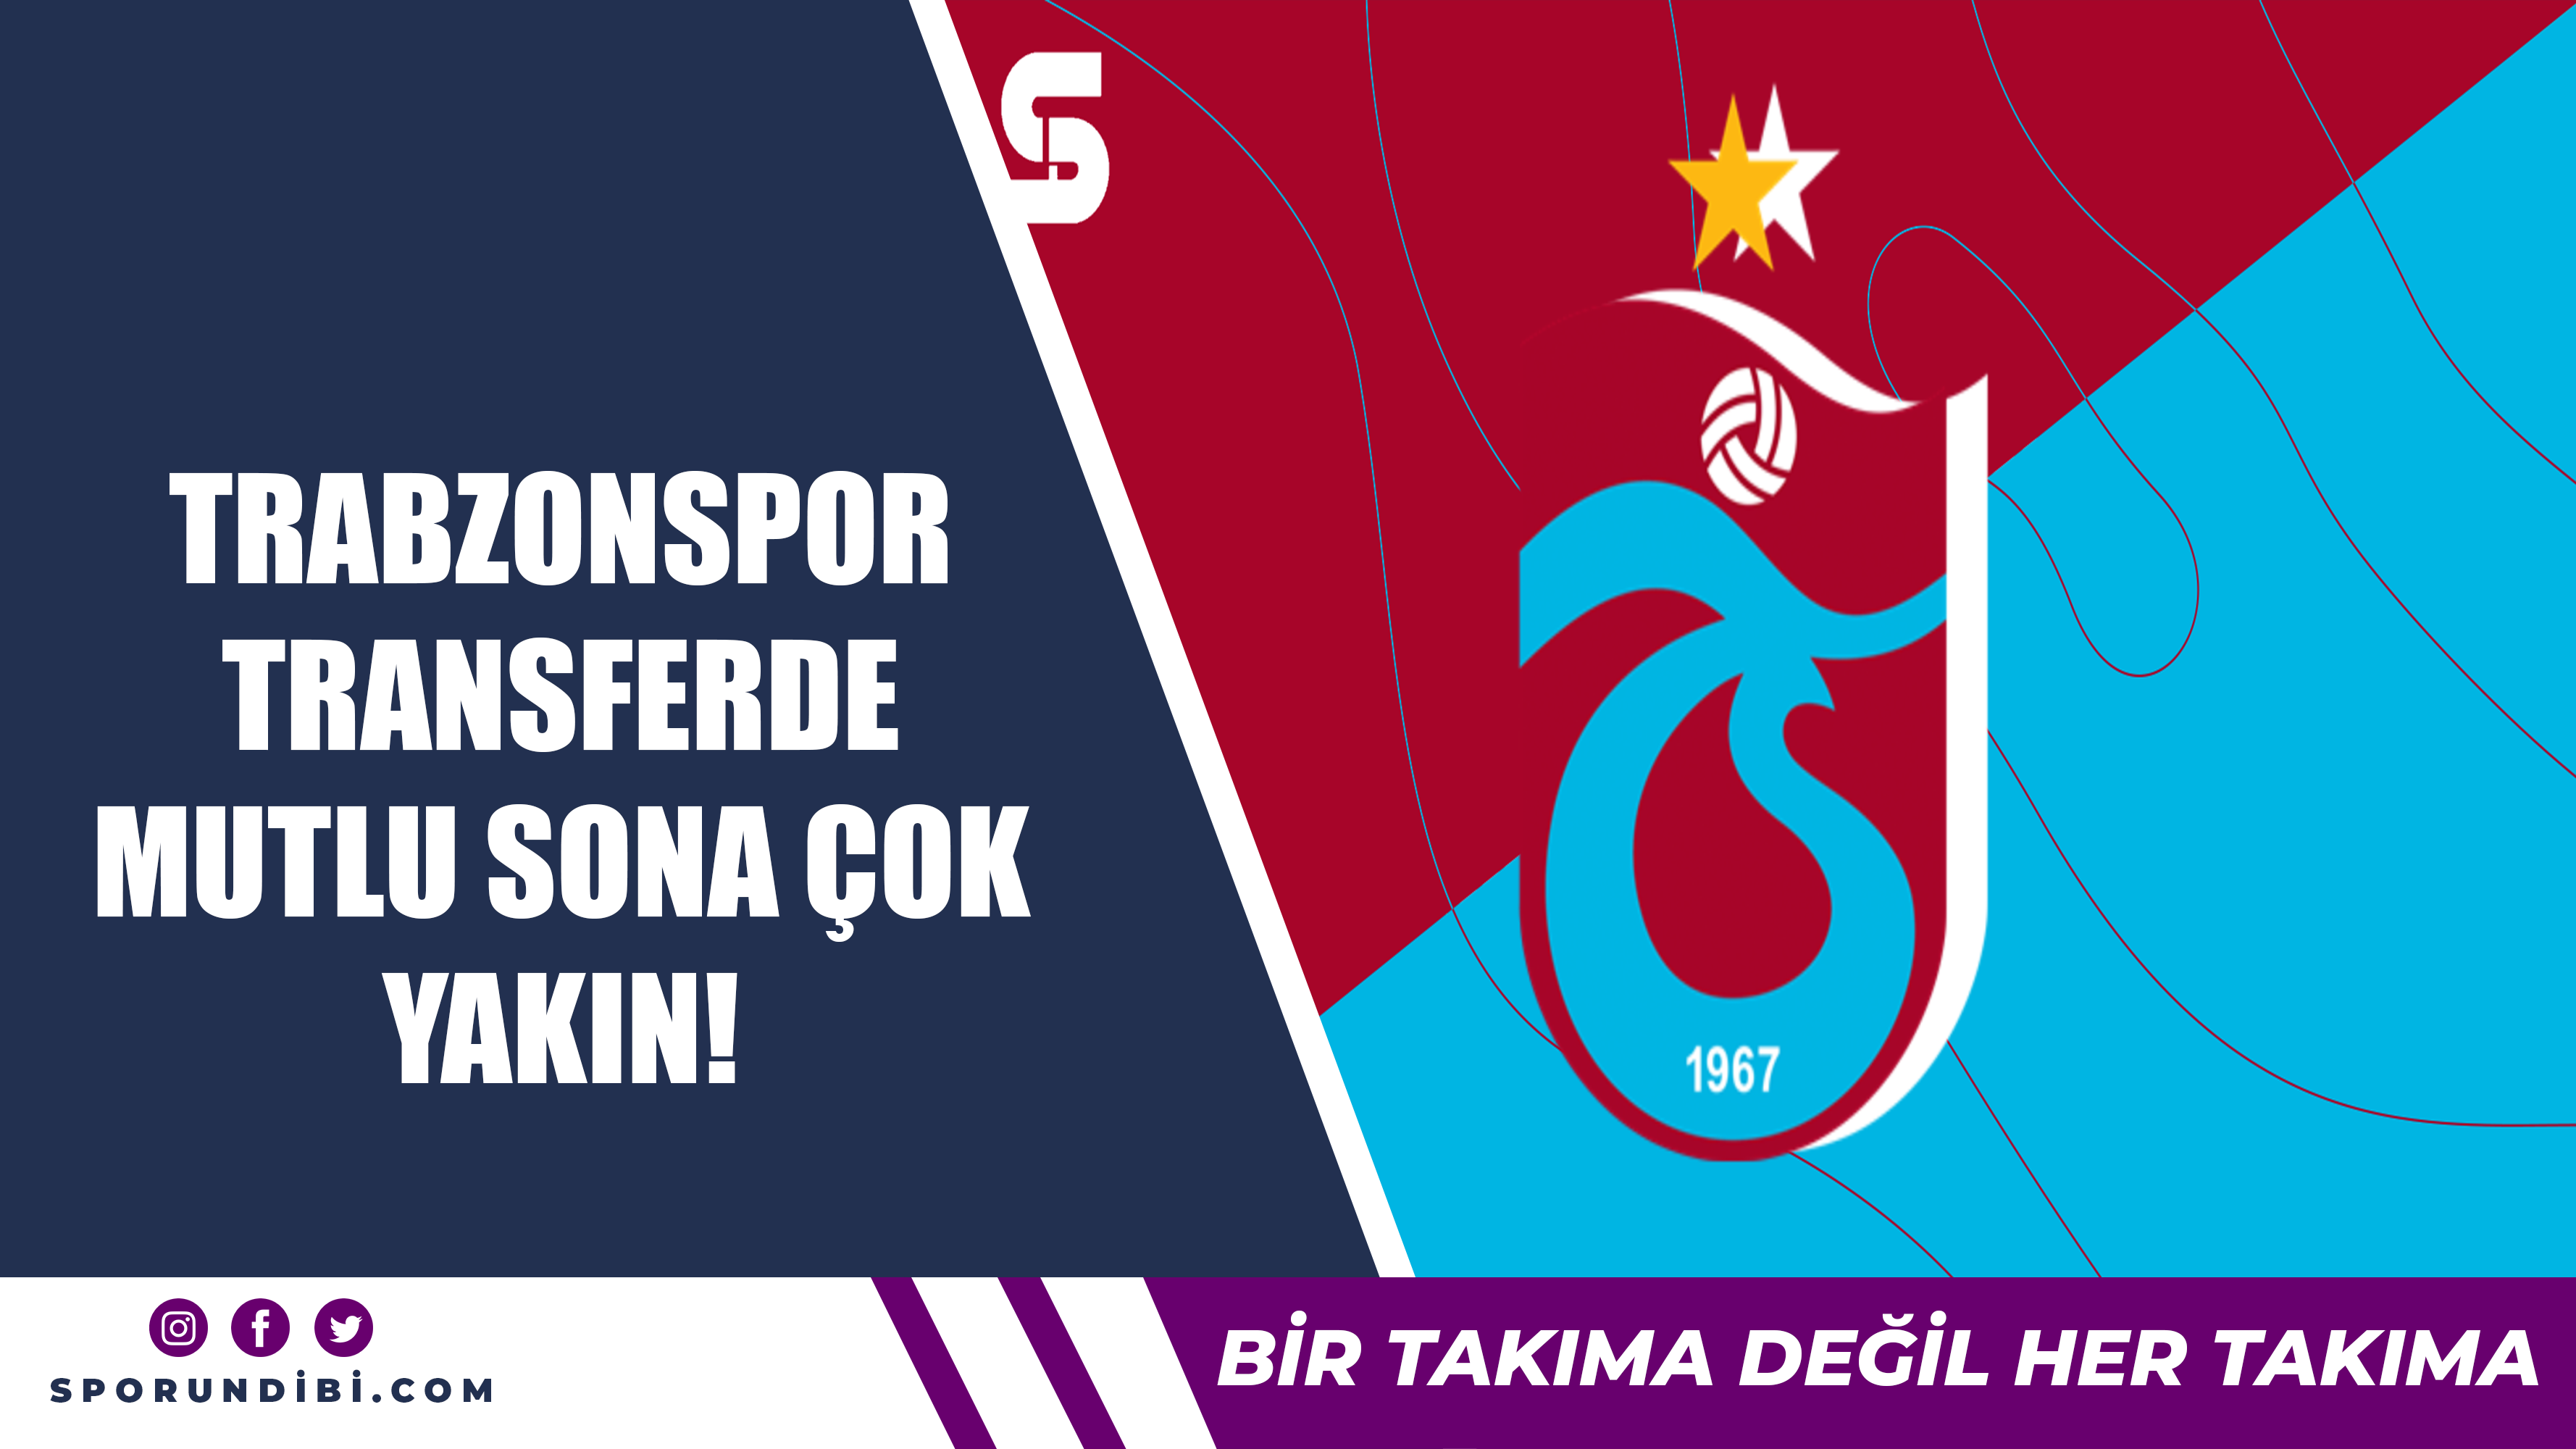 Trabzonspor transferde mutlu sona çok yakın!